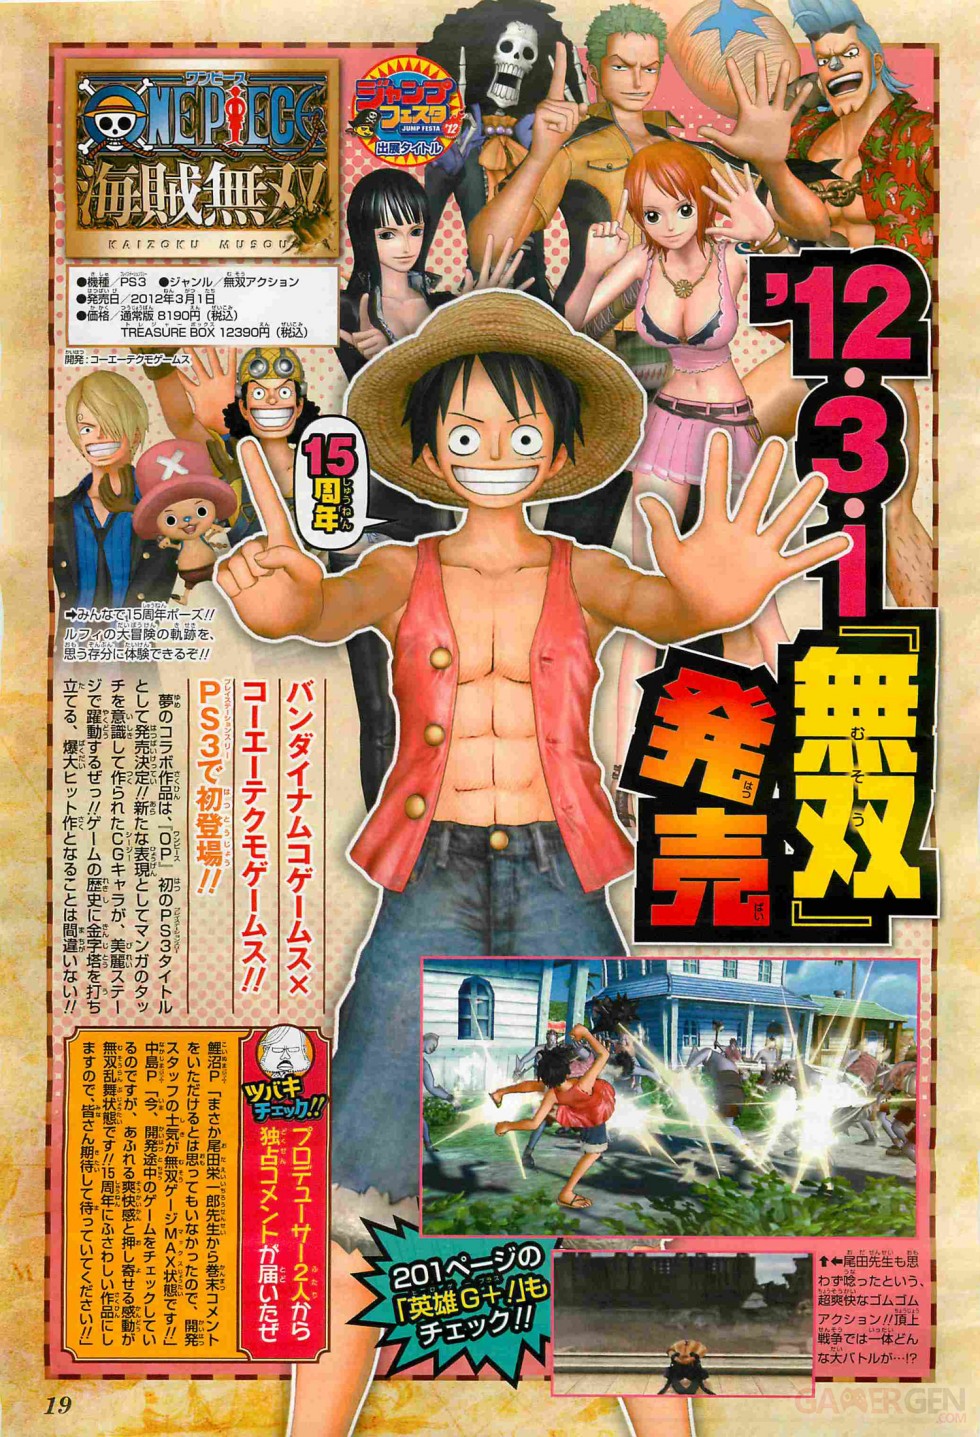 One-Piece-Kaizoku-Musou-Image-101211-01